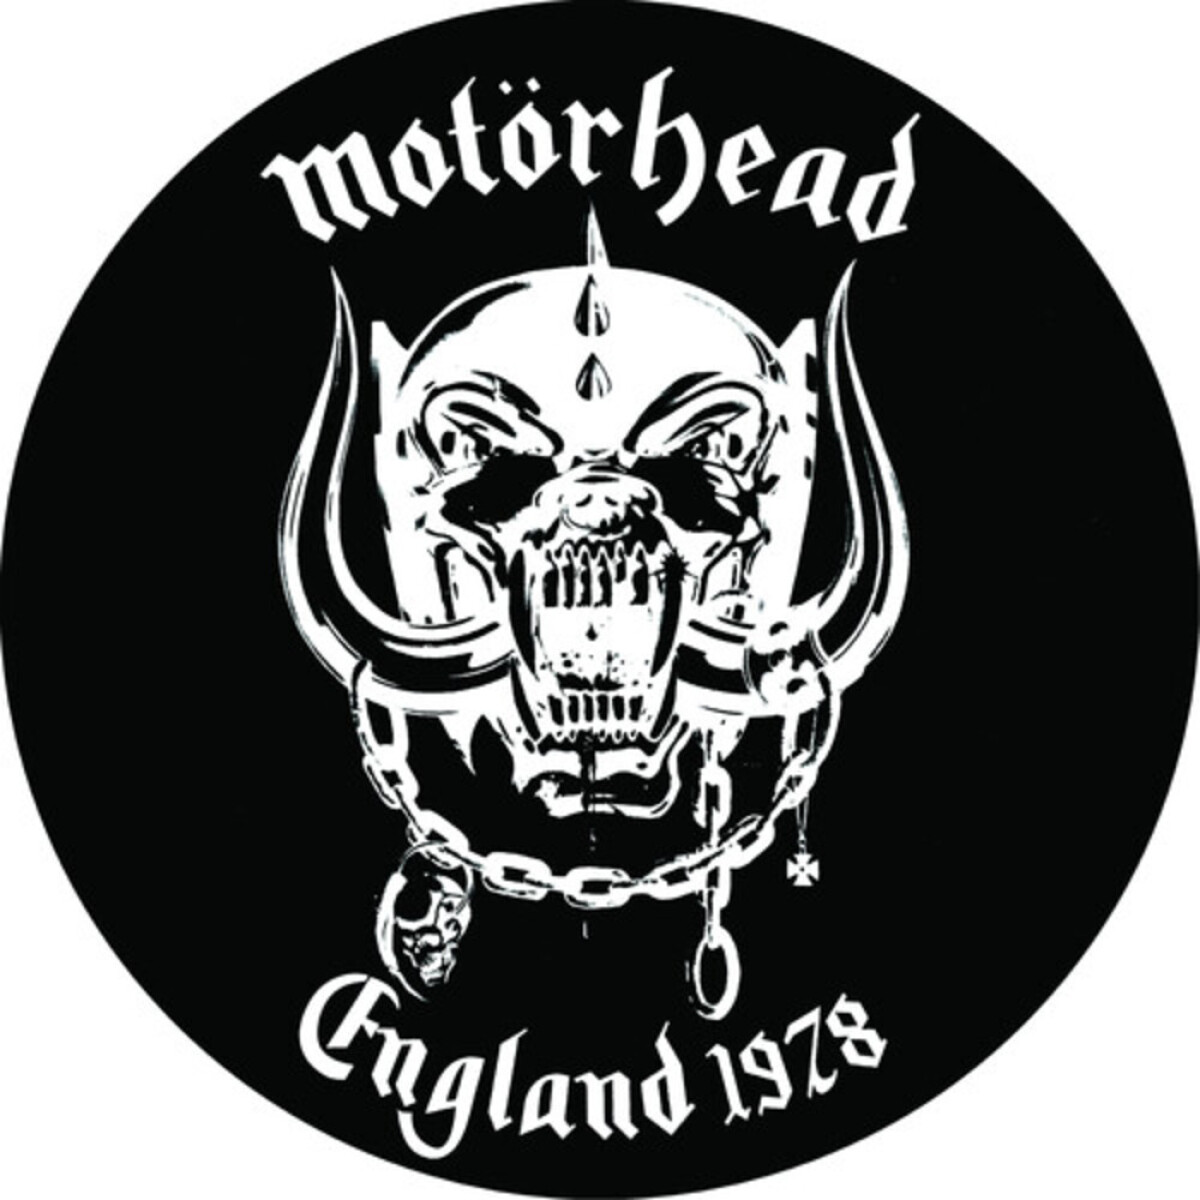 (l) Motorhead - England 1978 - Picture Disc Vinyl - Vinilo 